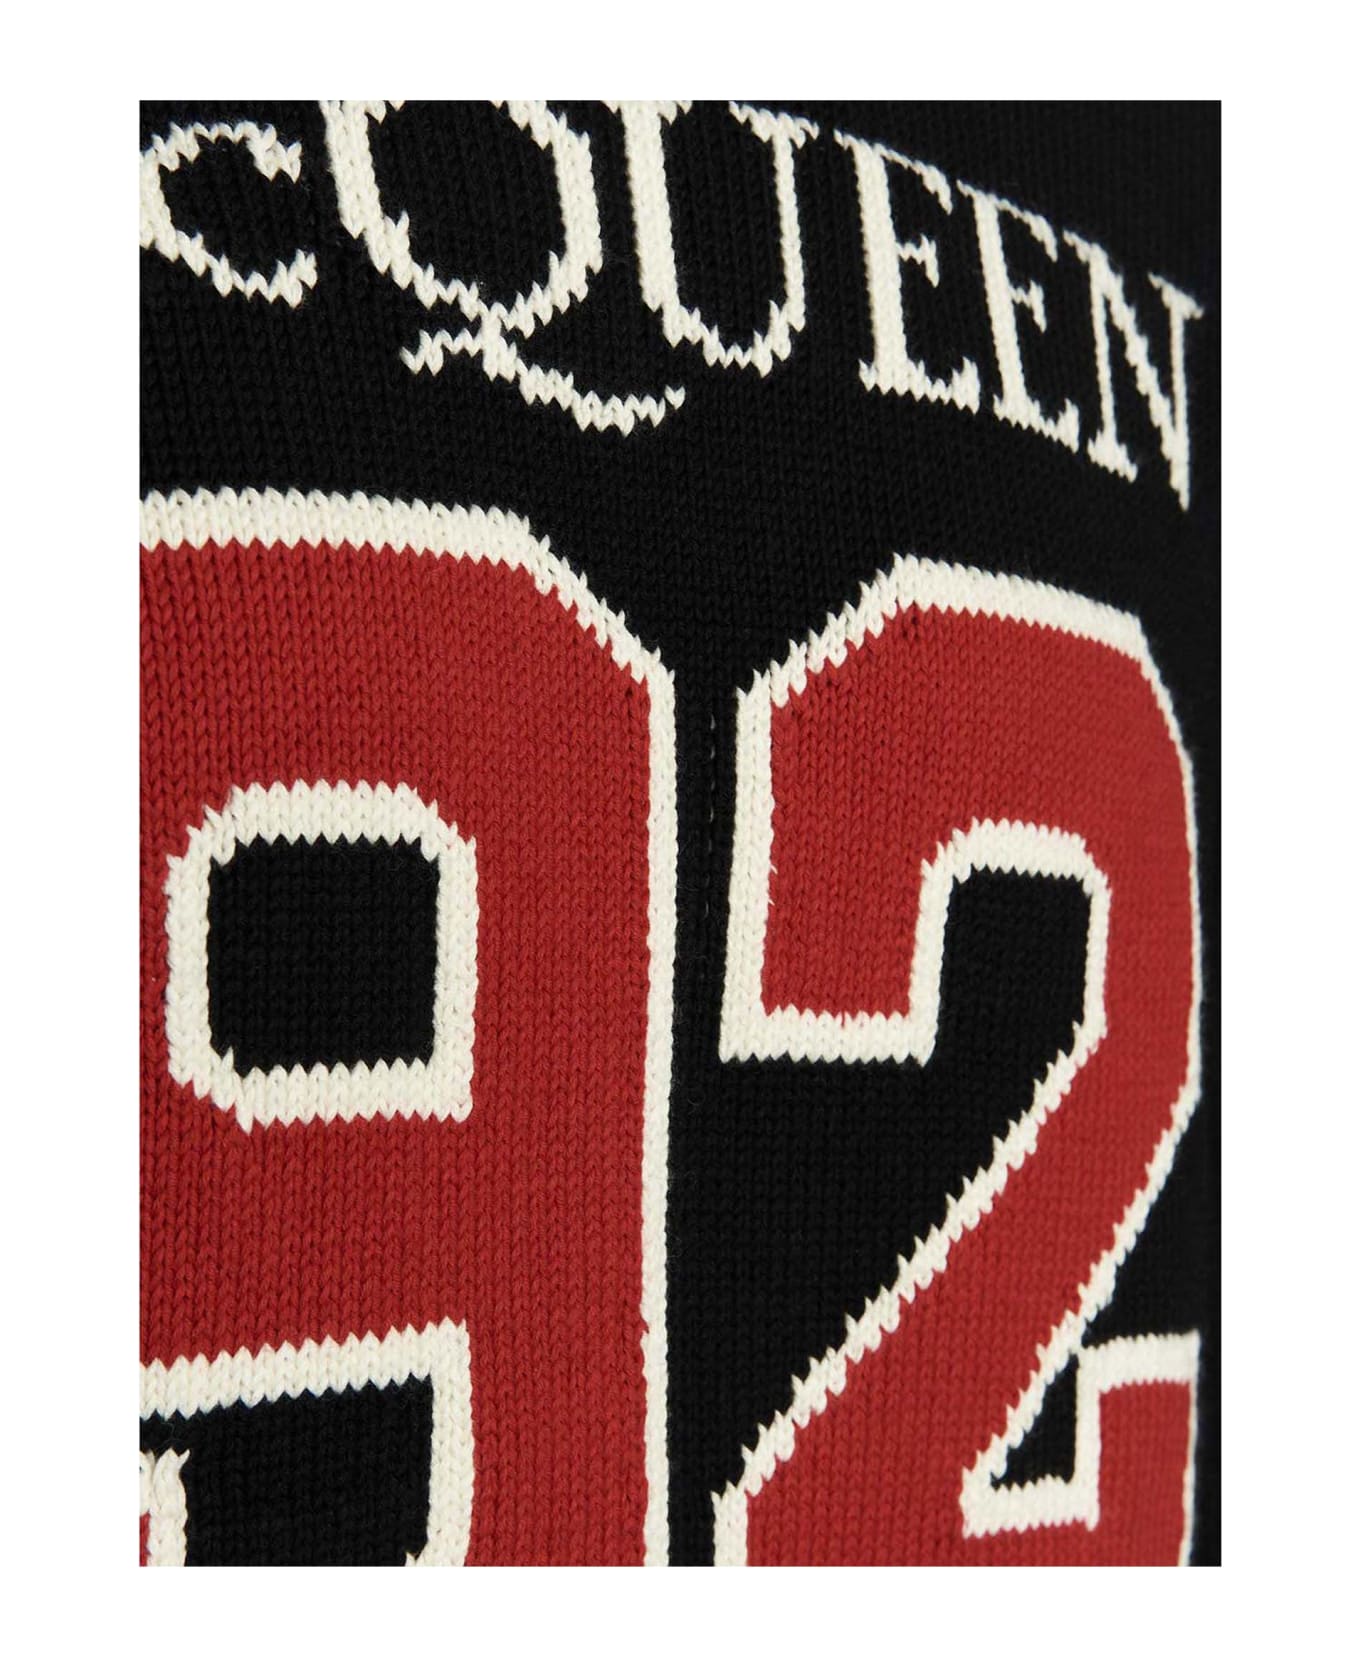 Alexander McQueen Black Mcqueen 92 Sweater - Nero ニットウェア